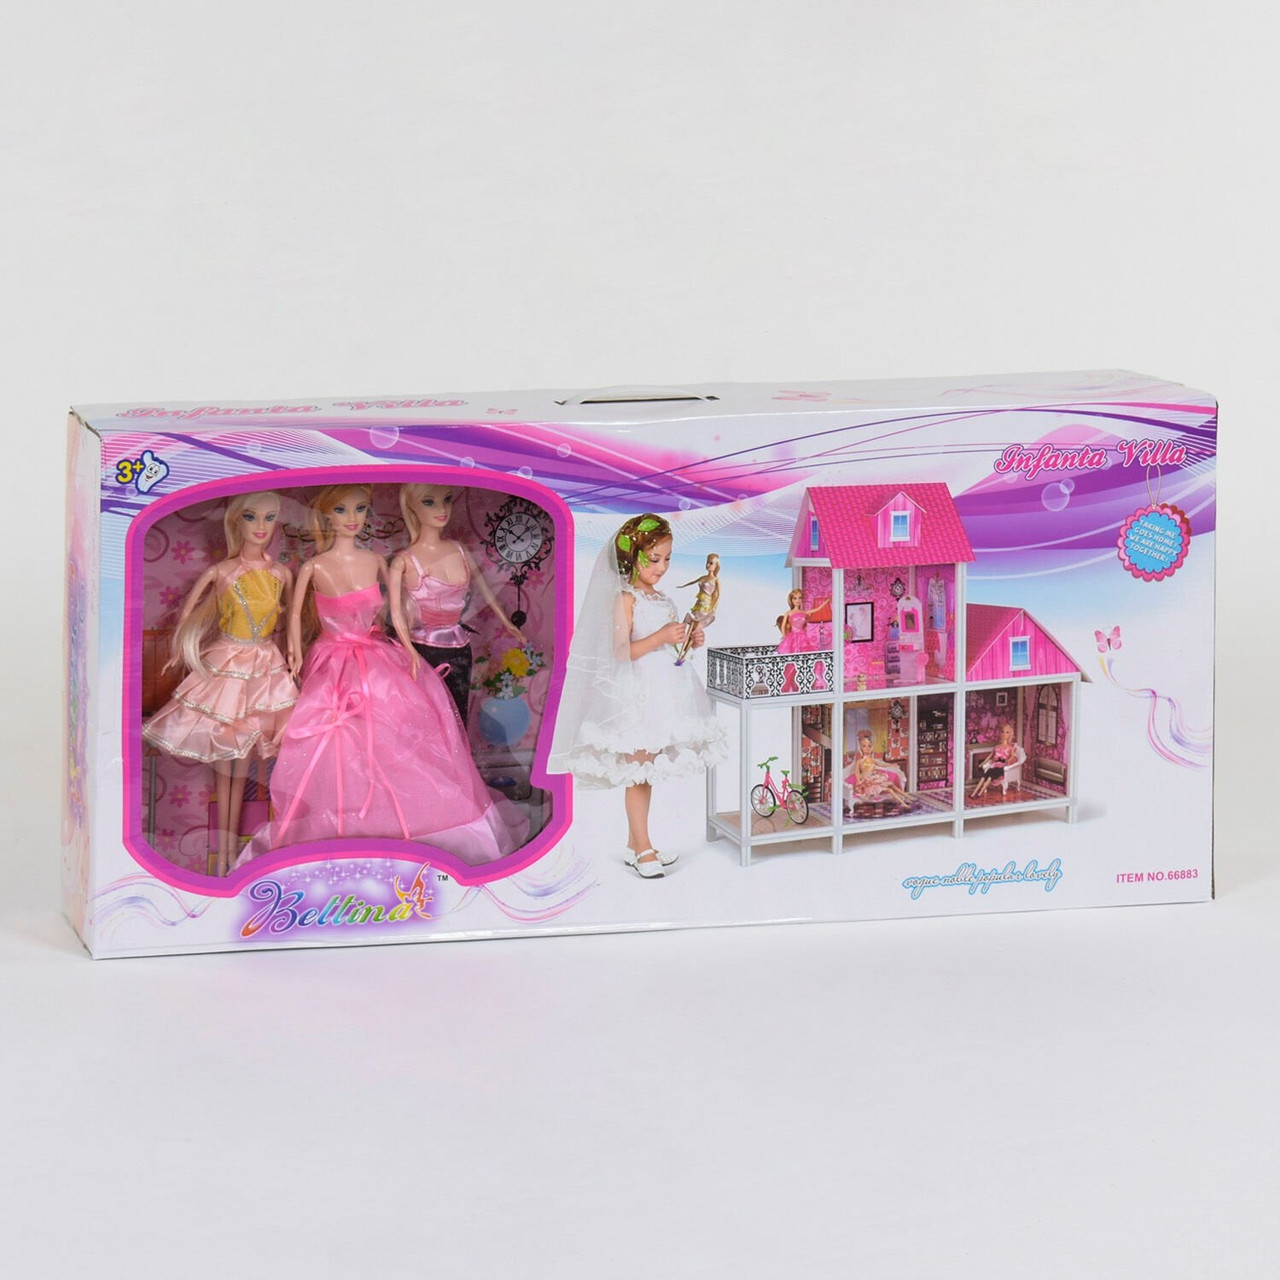 Будиночок для ляльок дитячий двоповерховий 66883, в наборі 3 ляльки, в коробці